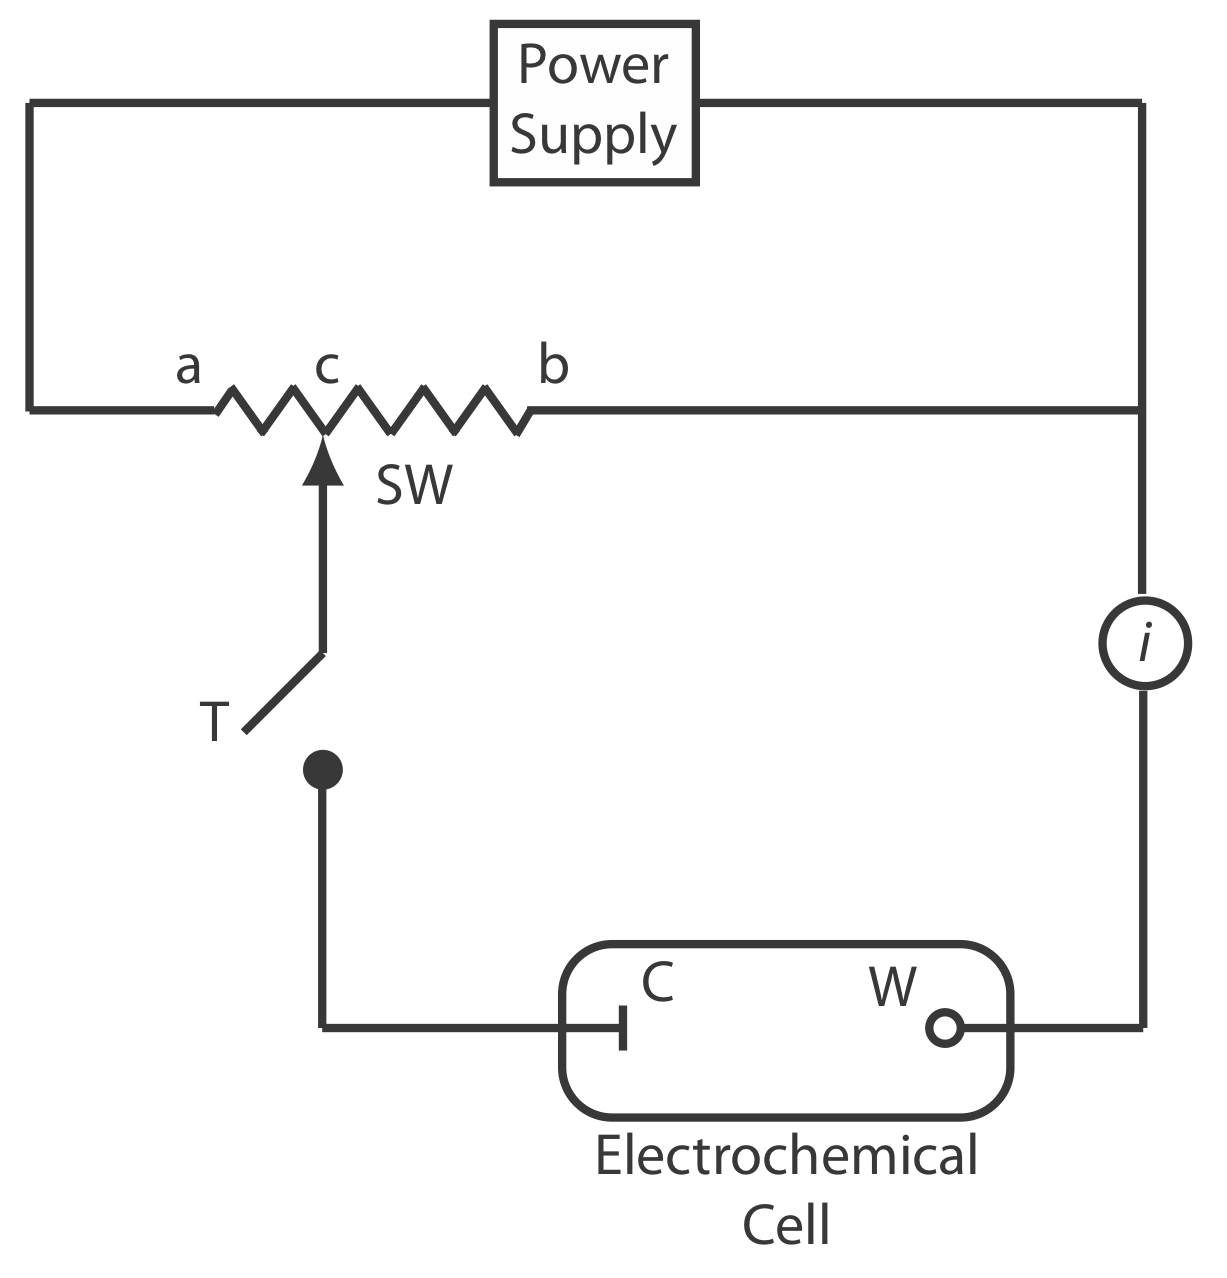 Diagrama esquemático de un potenciómetro manual: C es el electrodo de referencia; W es el electrodo de trabajo; SW es una resistencia de cable deslizante; T es una tecla de toma e i es un amperímetro para medir la corriente.